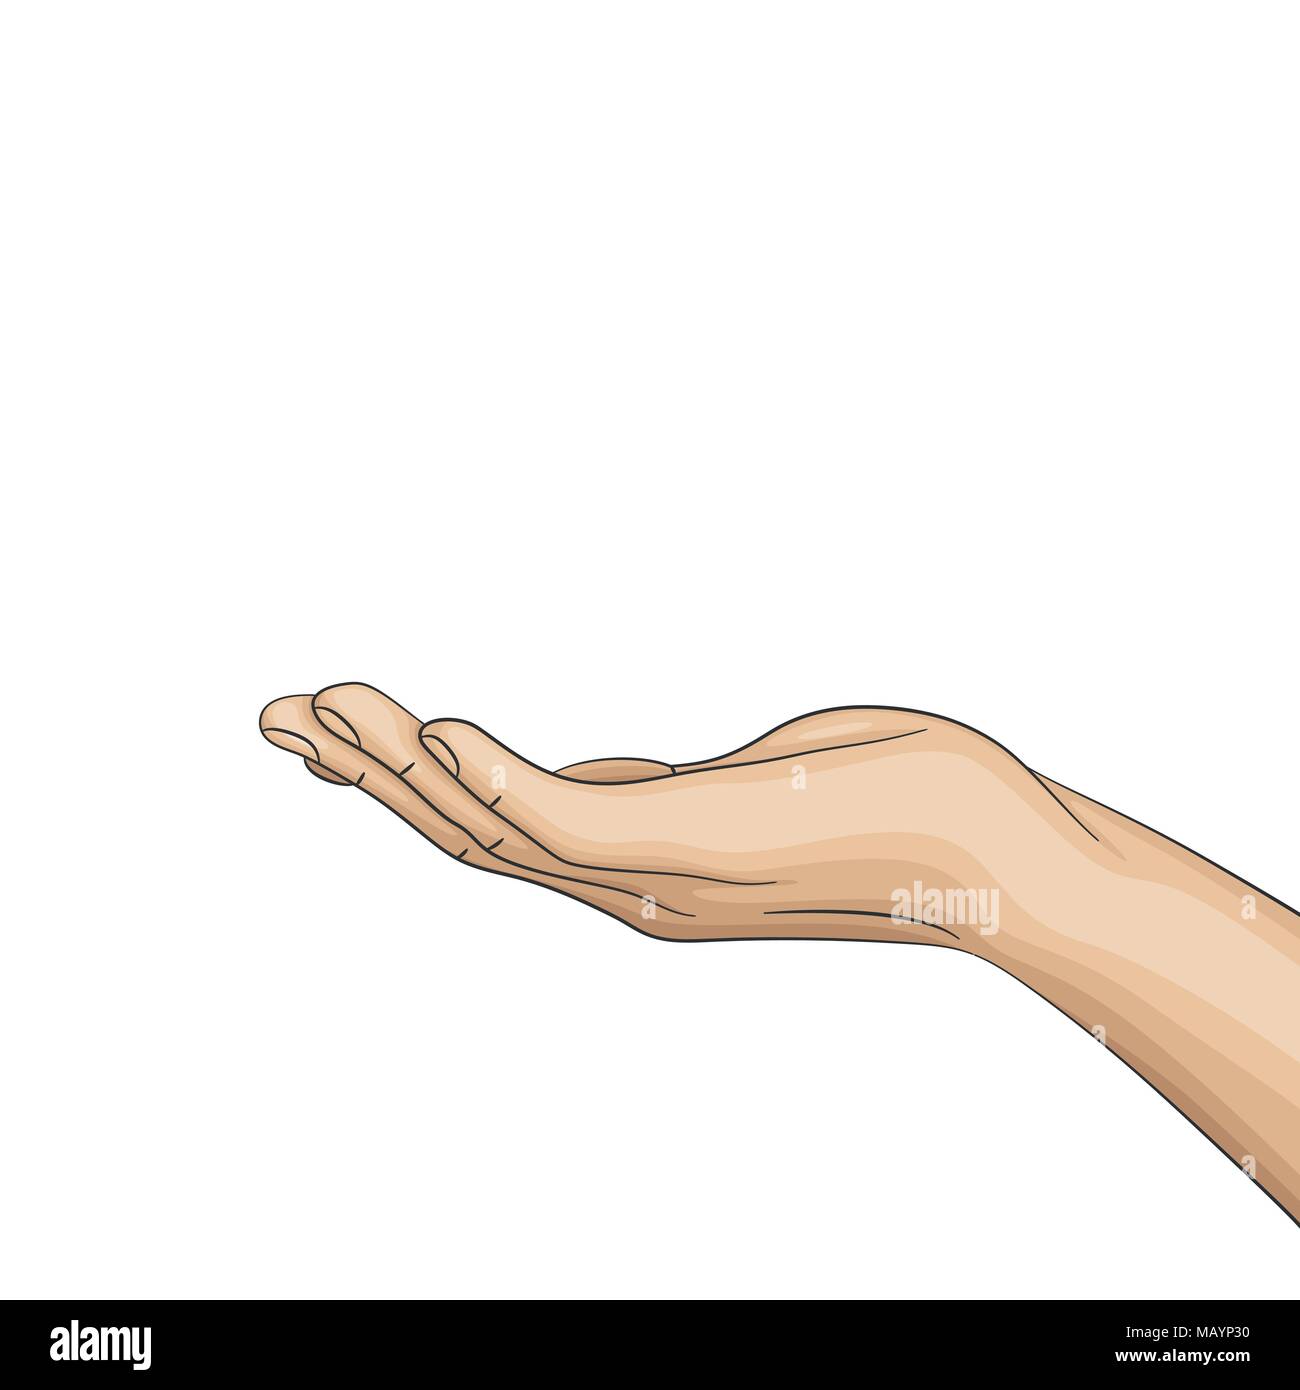 Hand gedreht die Handfläche nach oben, offene Hand. Stock Vektor